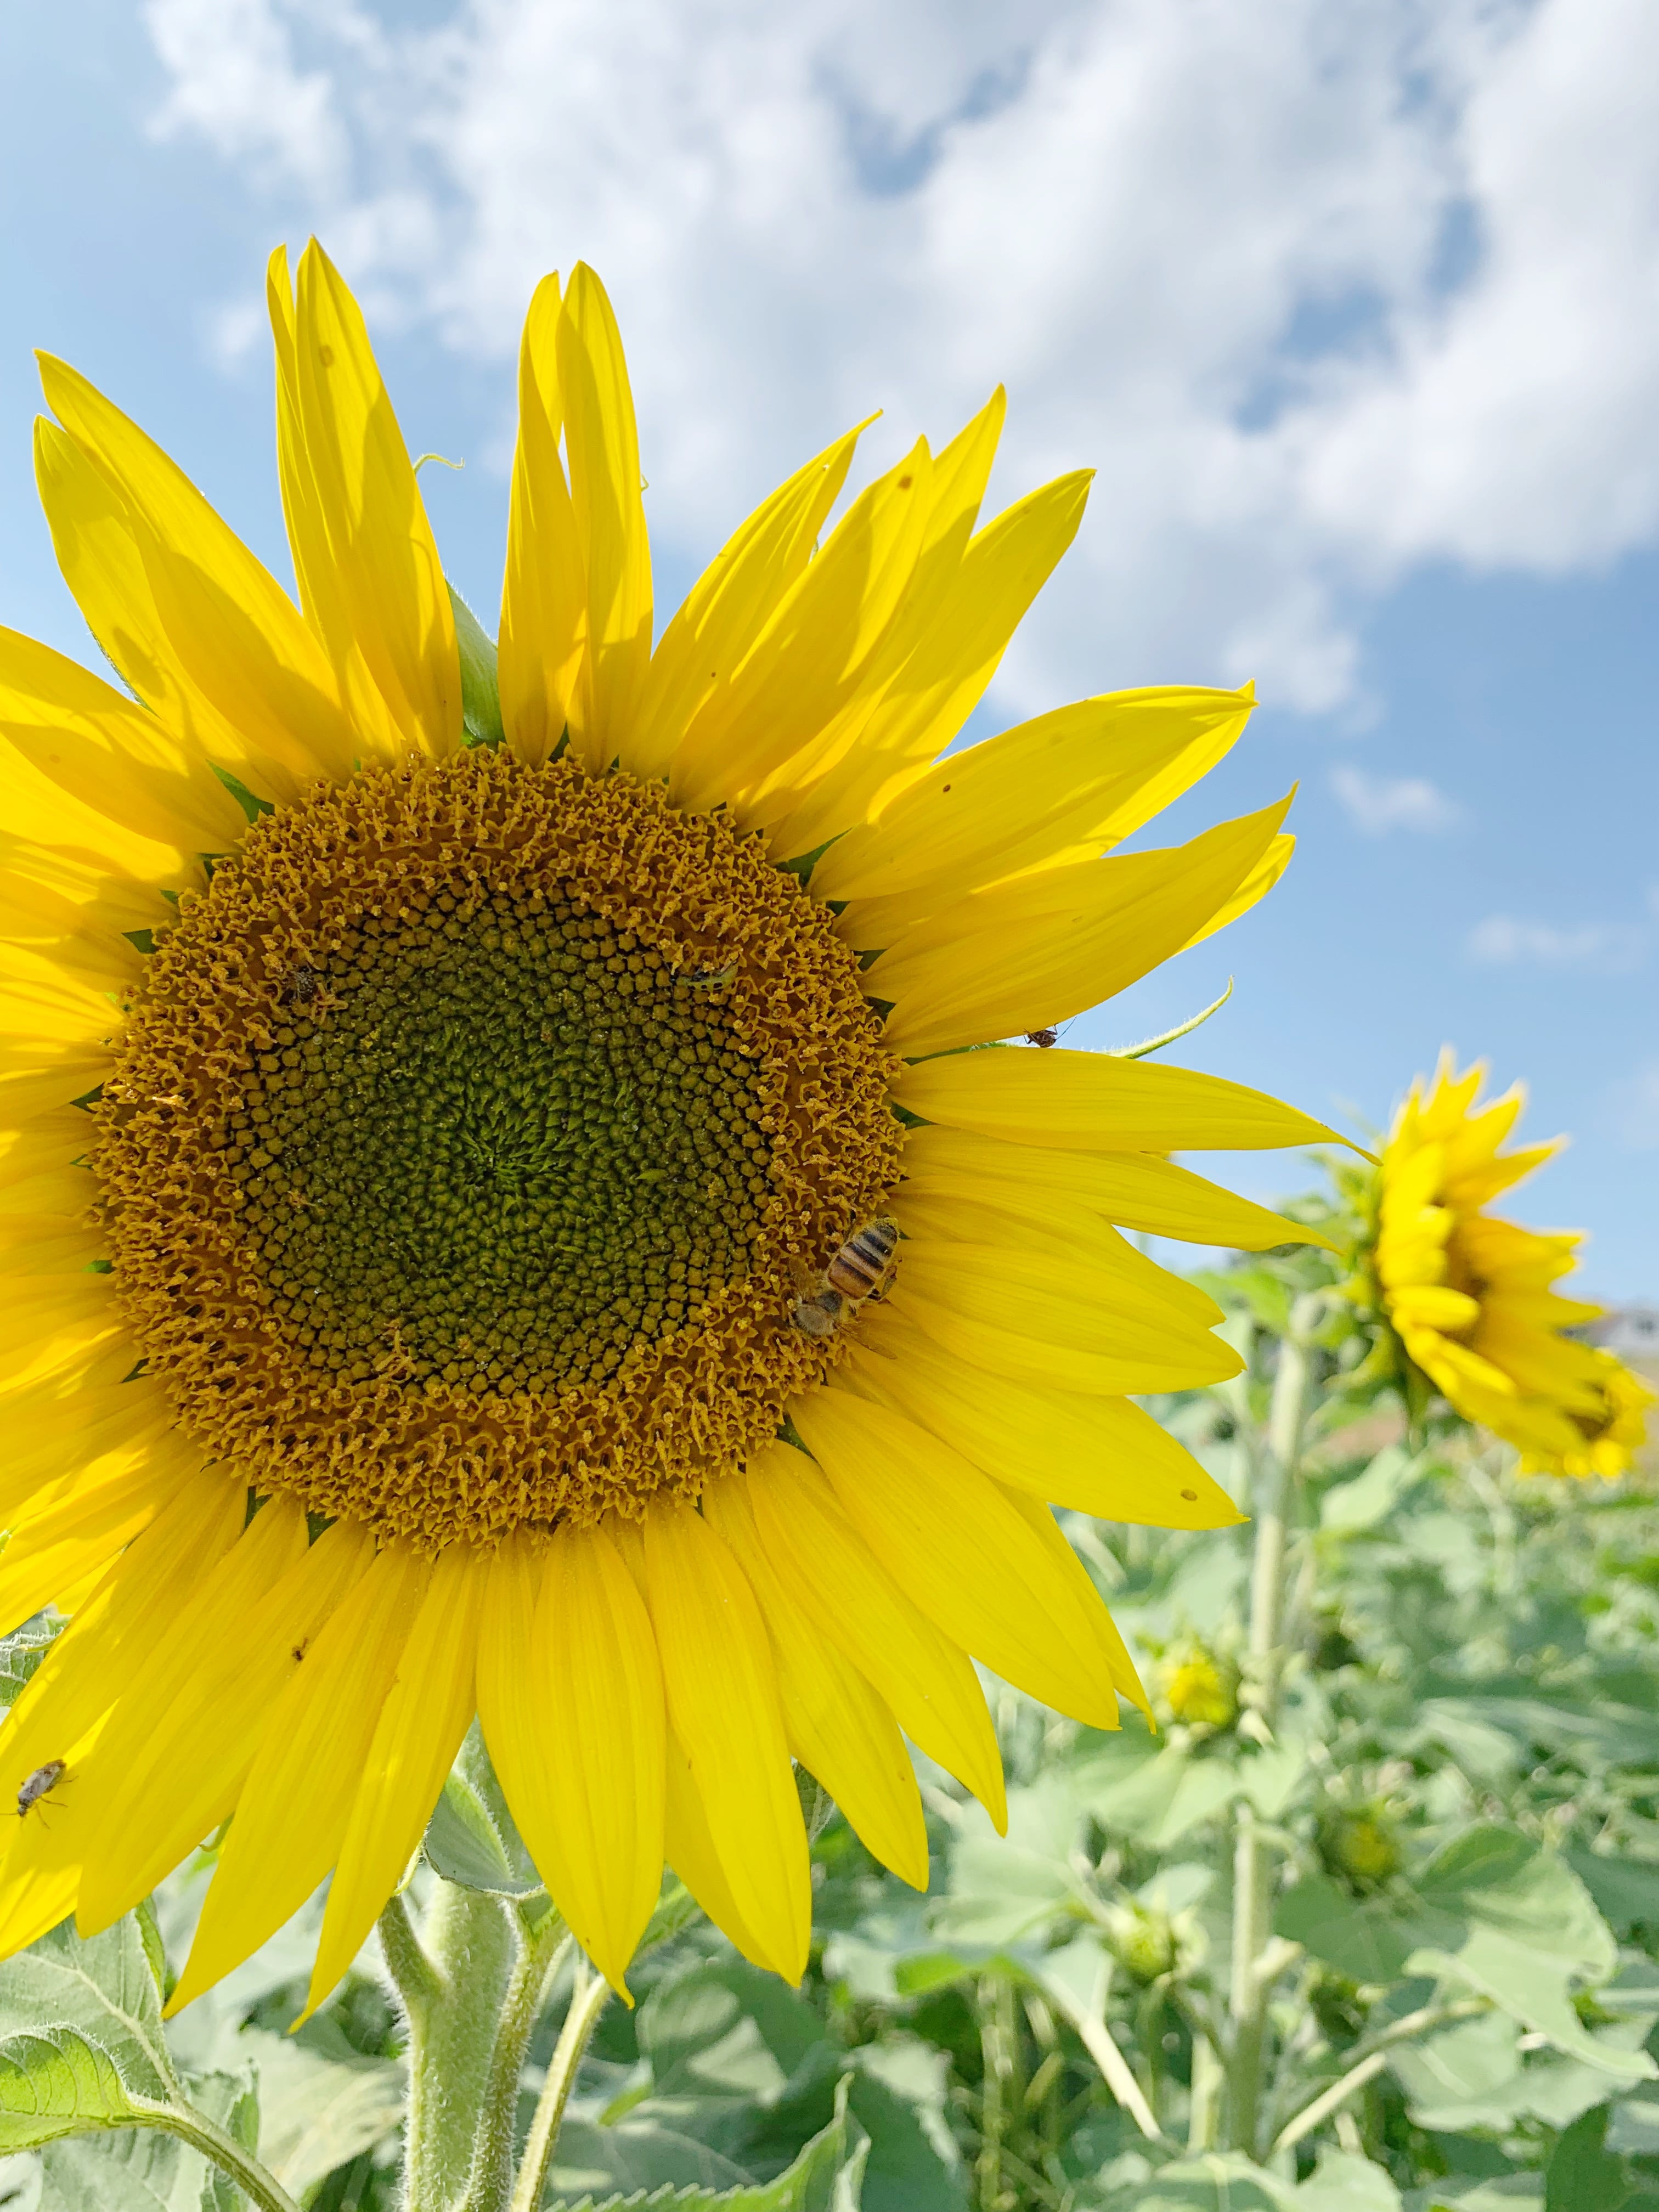 Sunflower field - Pennsylvania